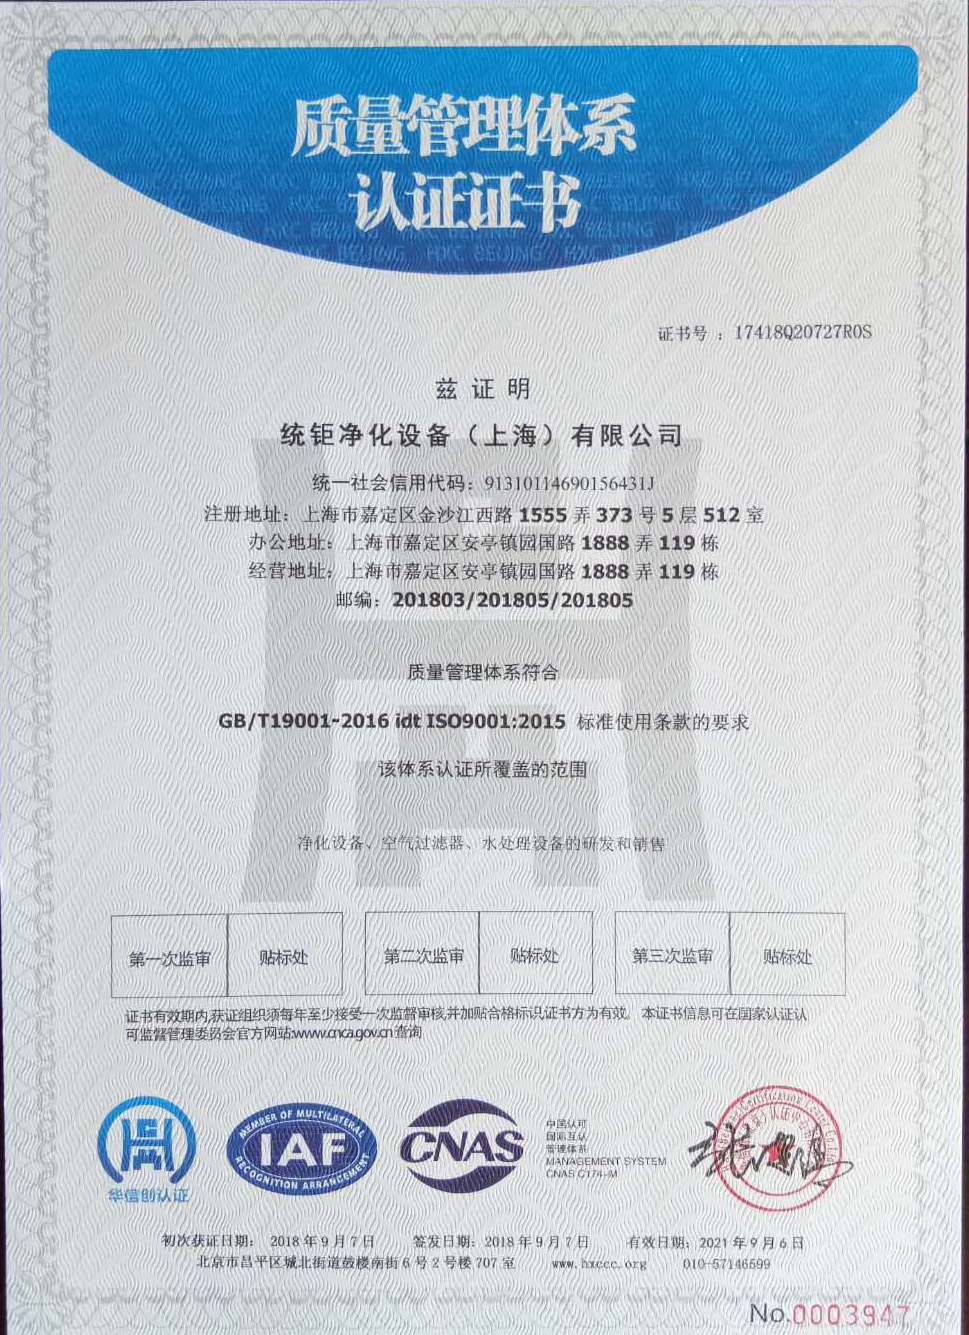 祝贺统钜净化设备公司通过ISO9001：2015质量管理体系认证。